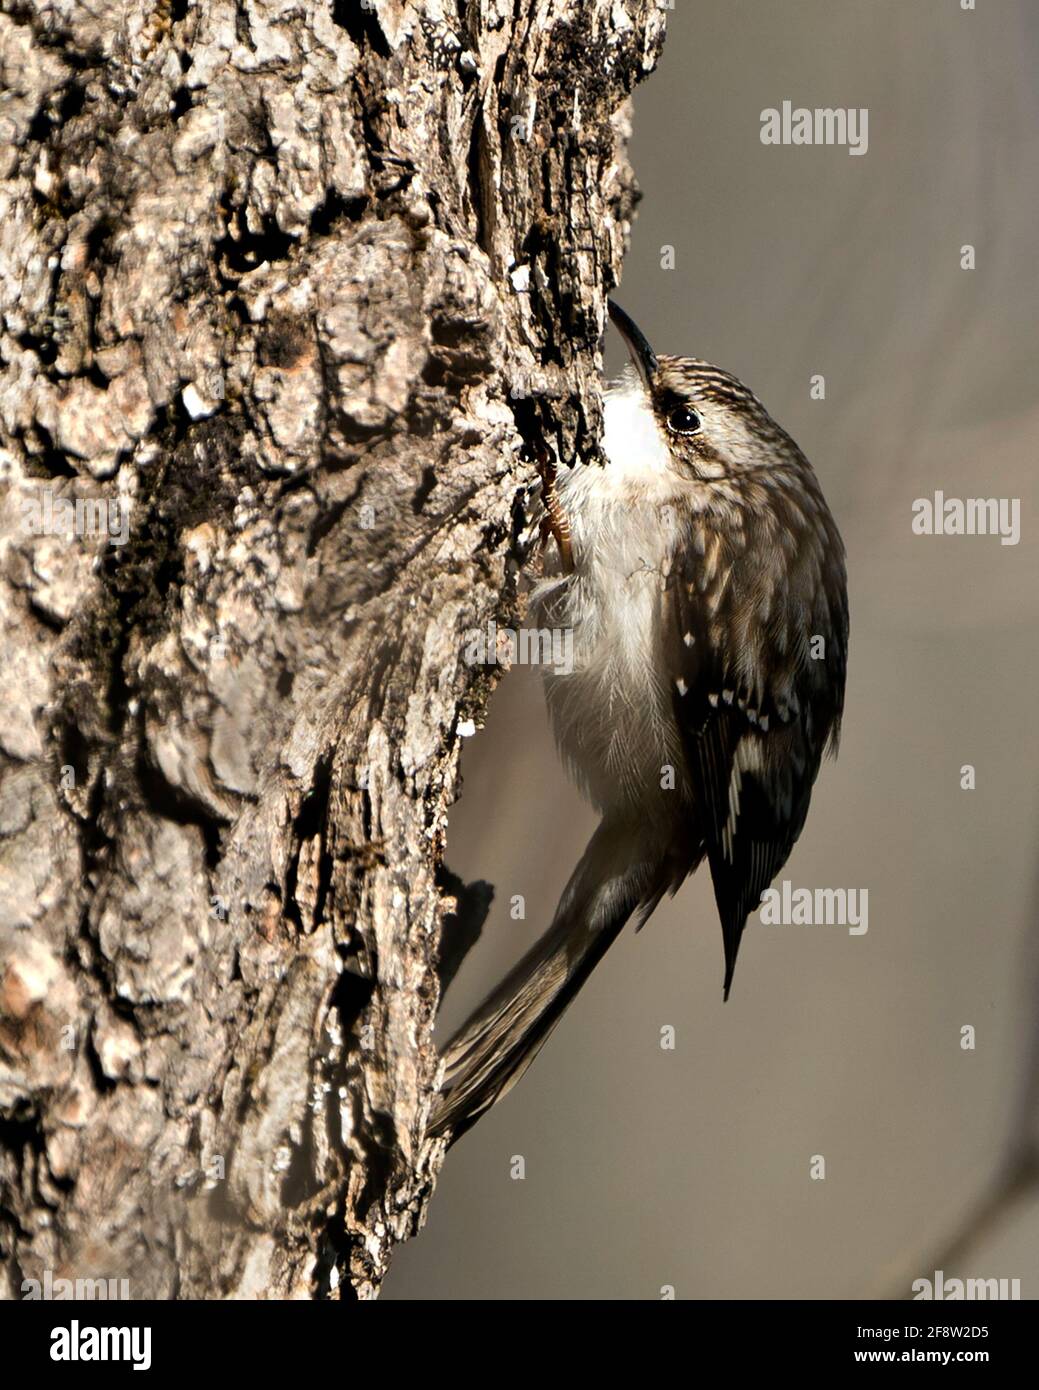 Brown Creeper uccello primo piano su un tronco di albero alla ricerca di insetto nel suo ambiente e habitat e la visualizzazione di piume marroni, artigli ricurvi gancio. Foto Stock